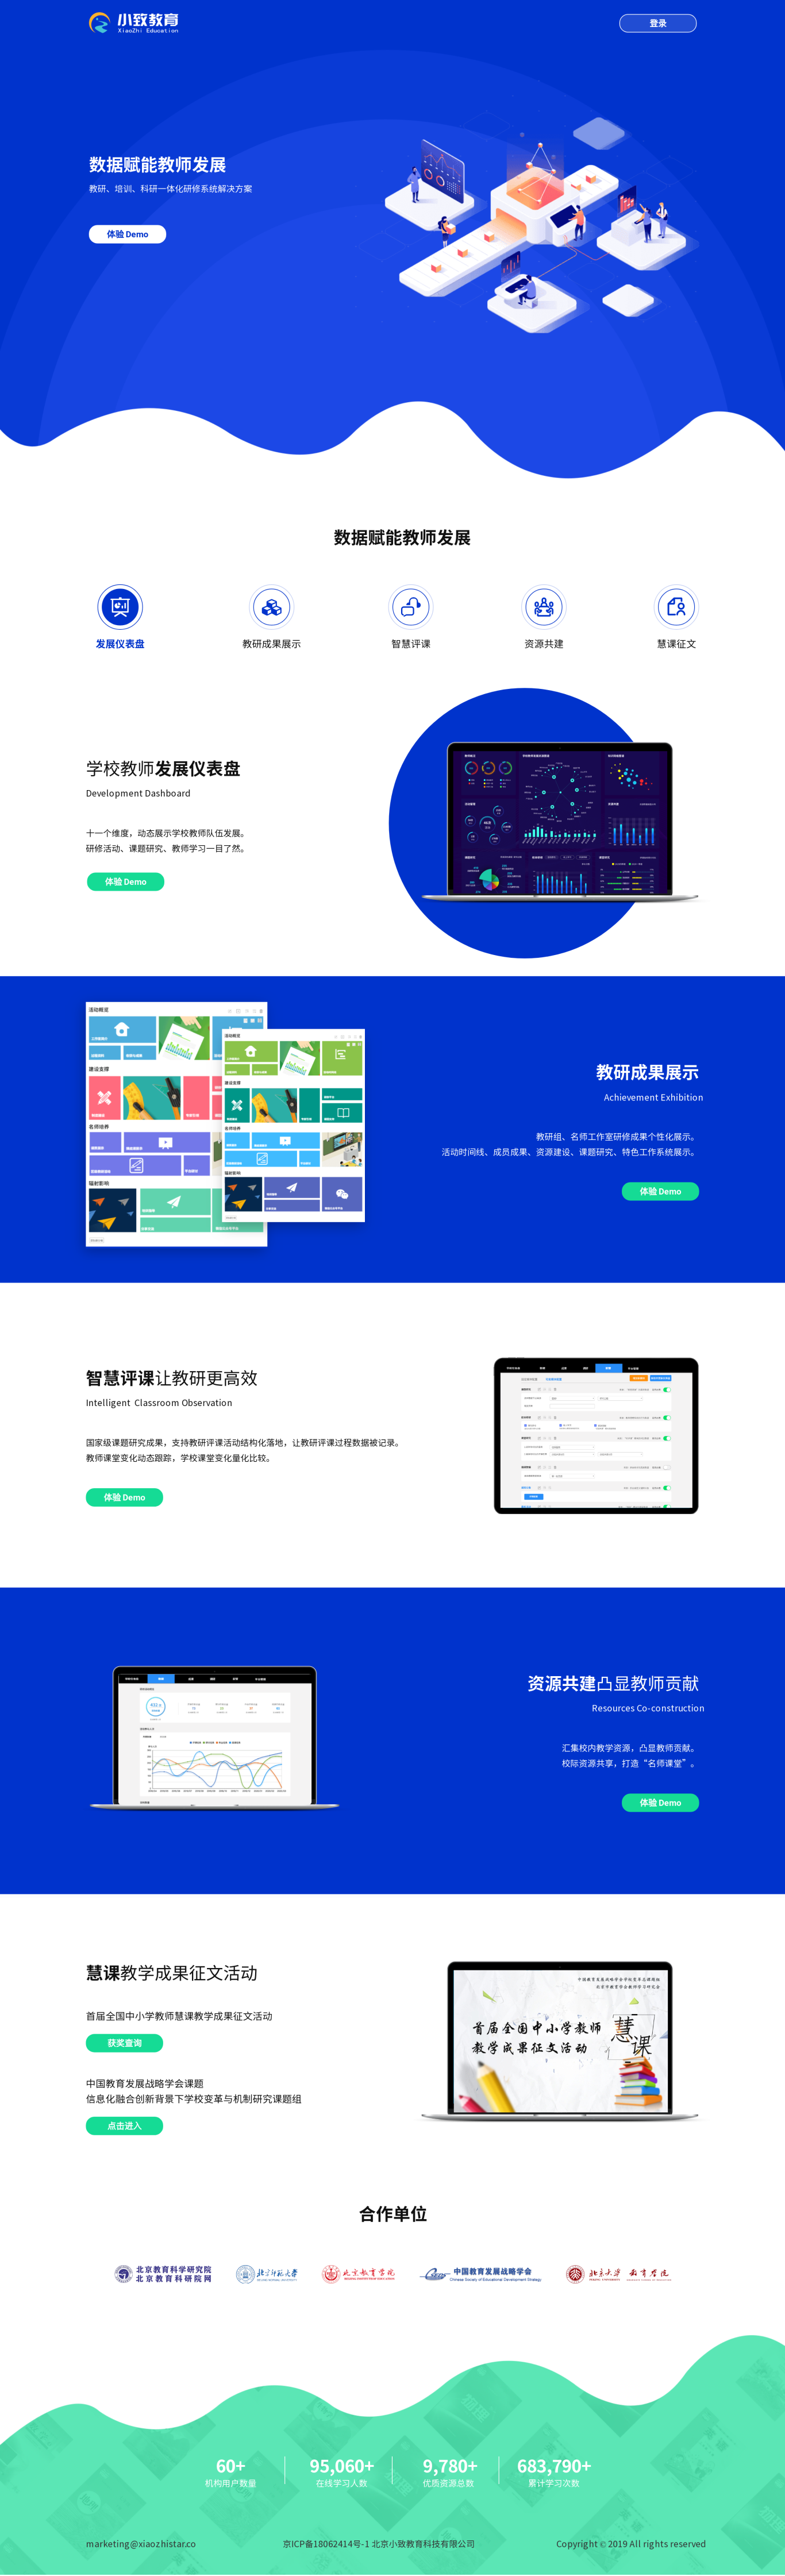 北京小致教育科技有限公司教育类网站设计（数据仪导盘，网站页面）图2